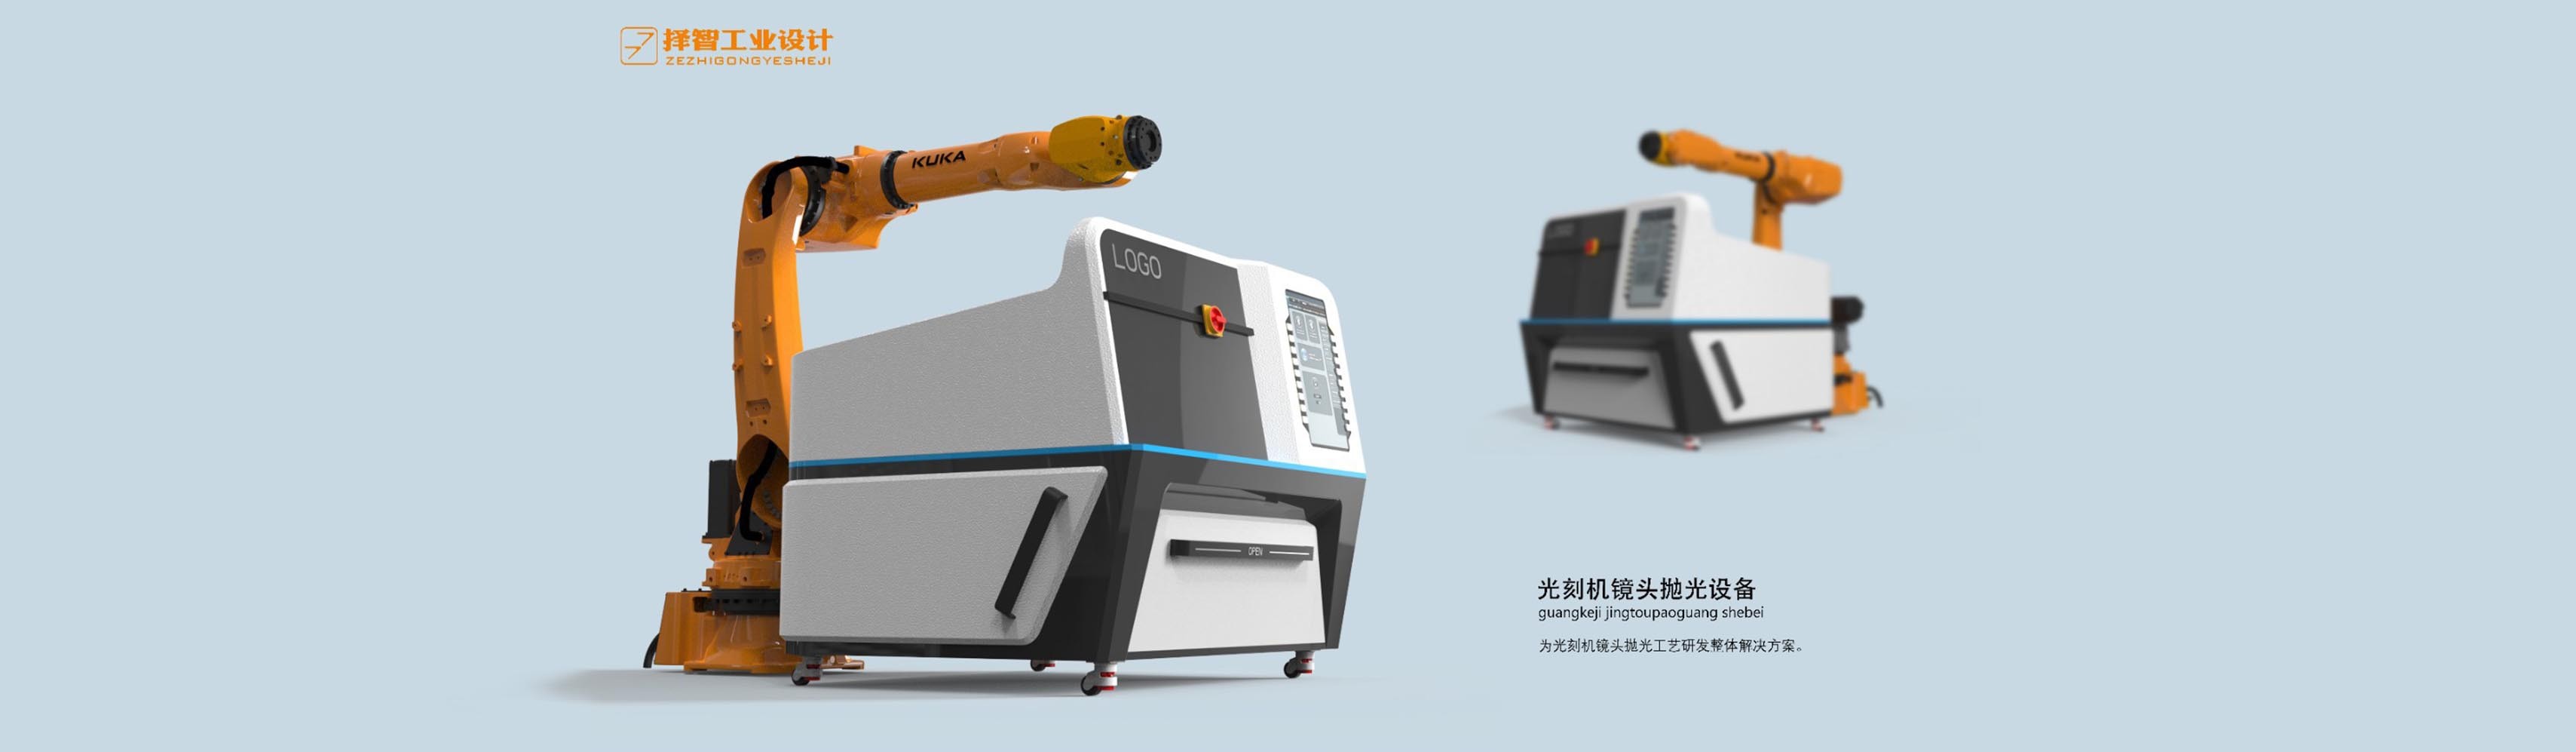 上海苏州产品设计 工业产品外观设计 结构设计 抛光机械设备外观设计